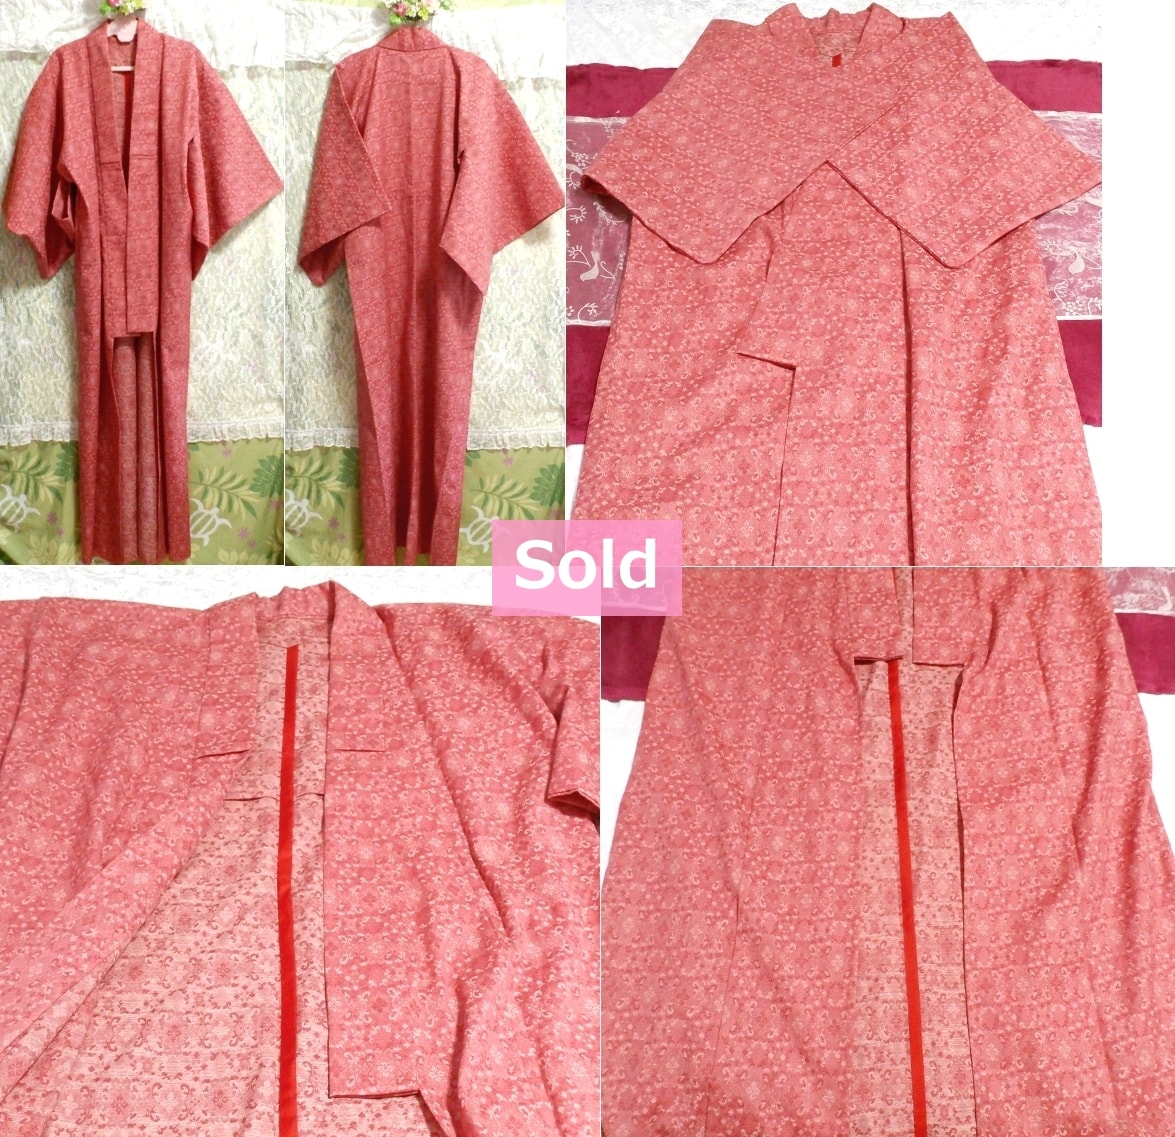 赤今様色模様柄/和服/着物 Red color pattern/Japanese clothing/kimono, ファッション&女性和服、着物&振袖